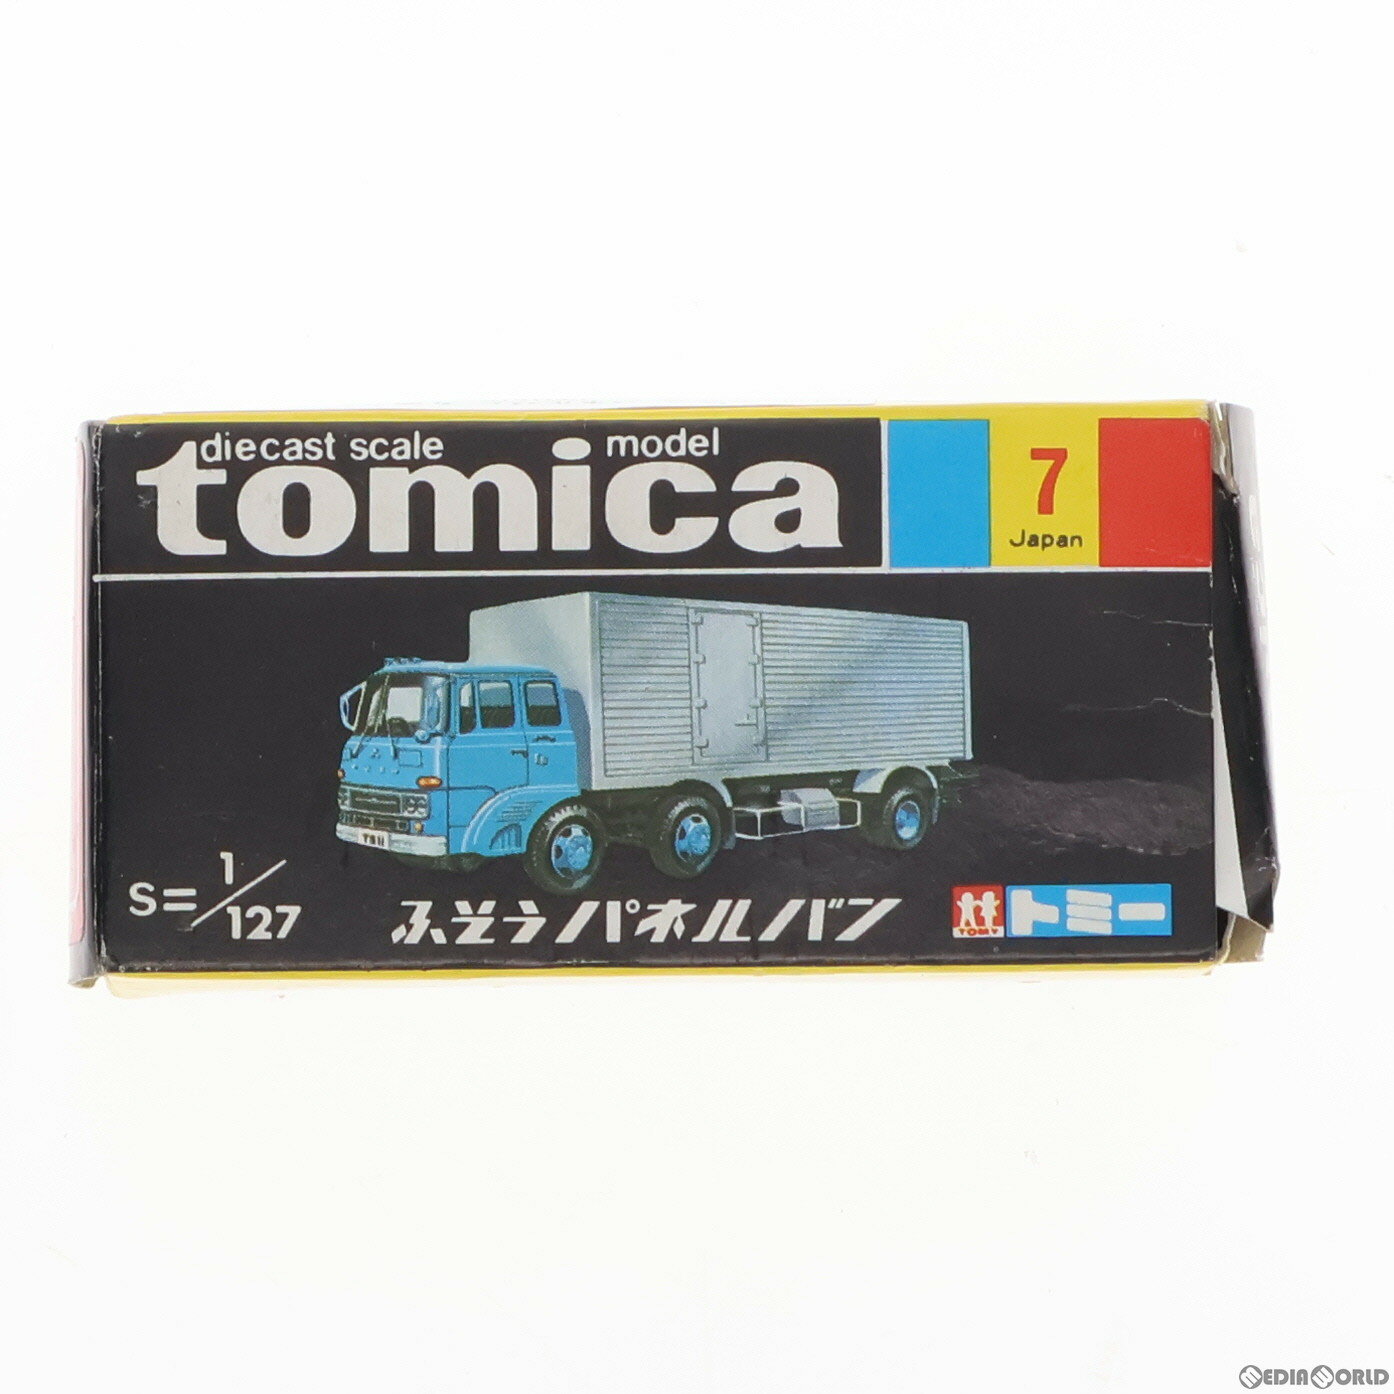 【中古】[MDL]トミカ No.7 1/127 ふそう パネルバン 丸運(黒箱) 完成品 ミニカー トミー(19991231)